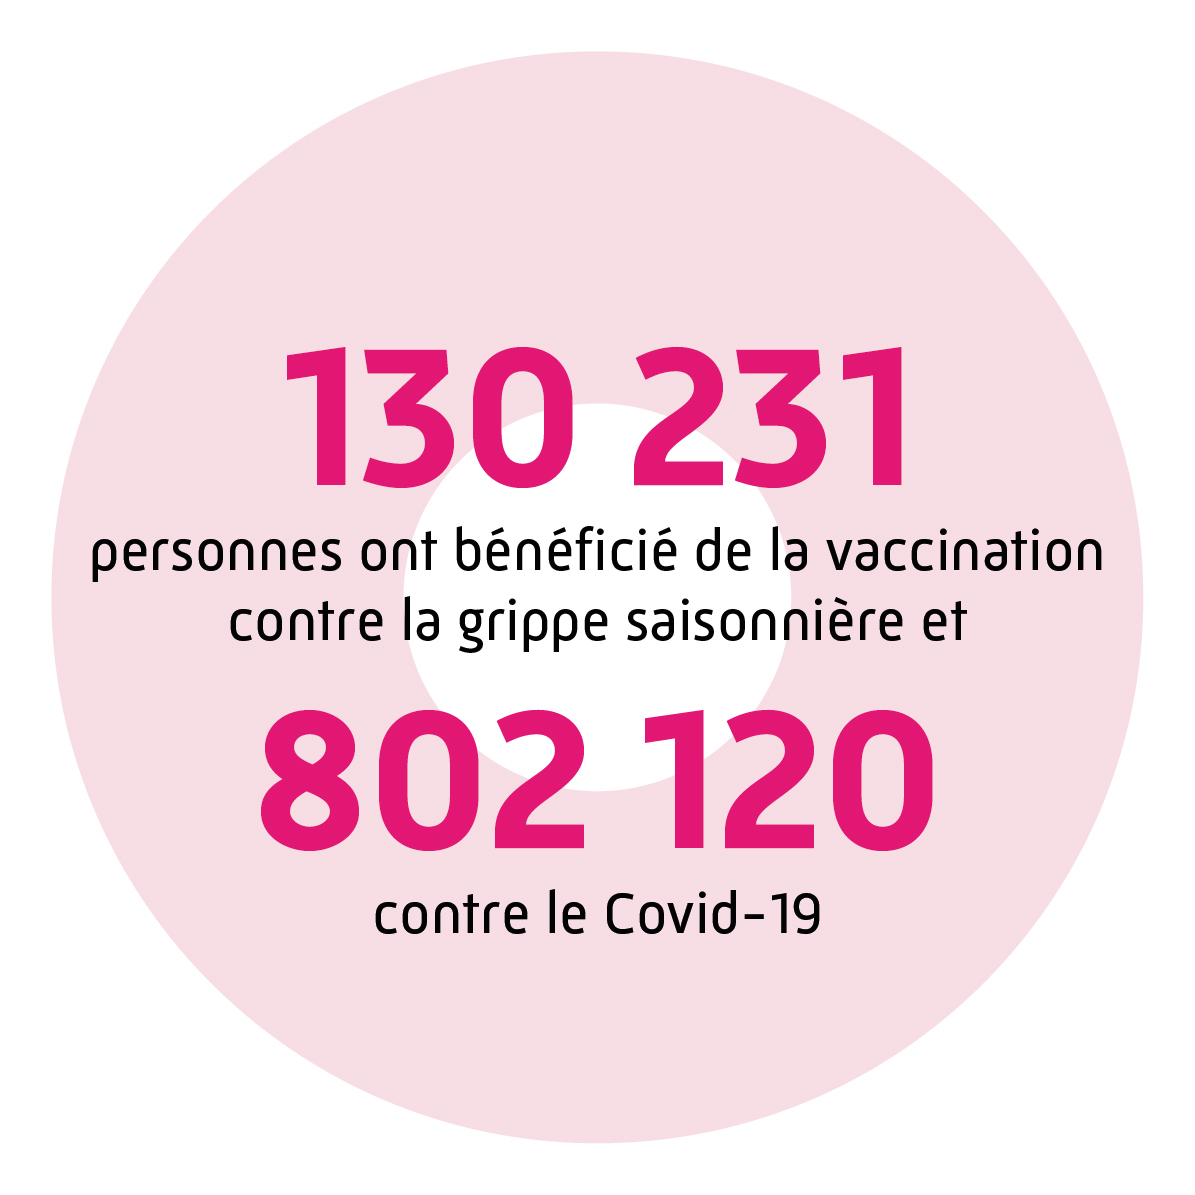 130 231 personnes ont bénéficiés de la vaccination contre la grippe saisonnière et 802 120 contre le Covid-19.